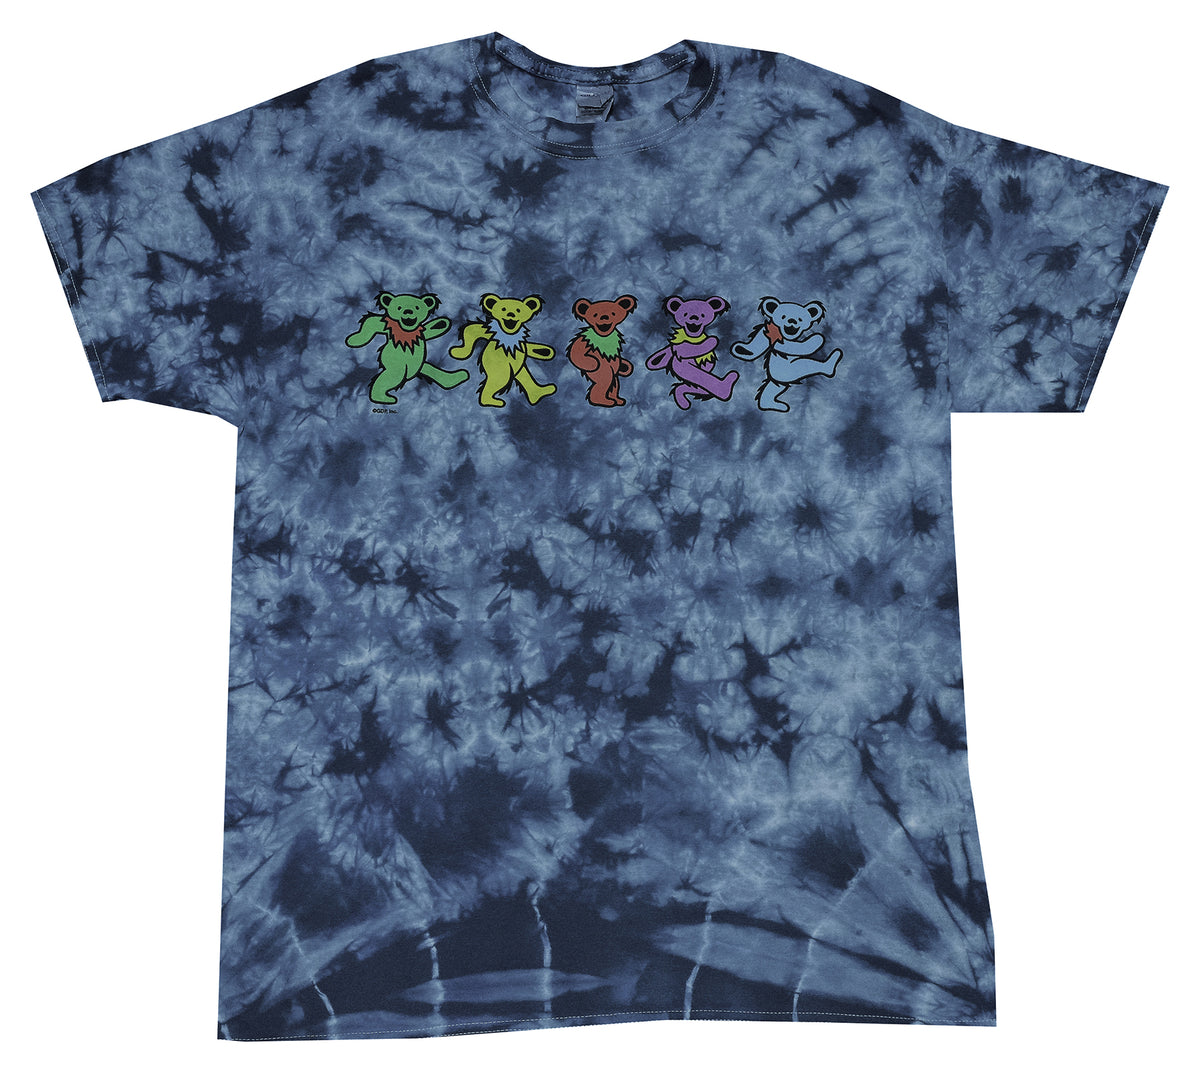 Grateful Dead Spiral Bears Tie-Dye T-Shirt, Size XL